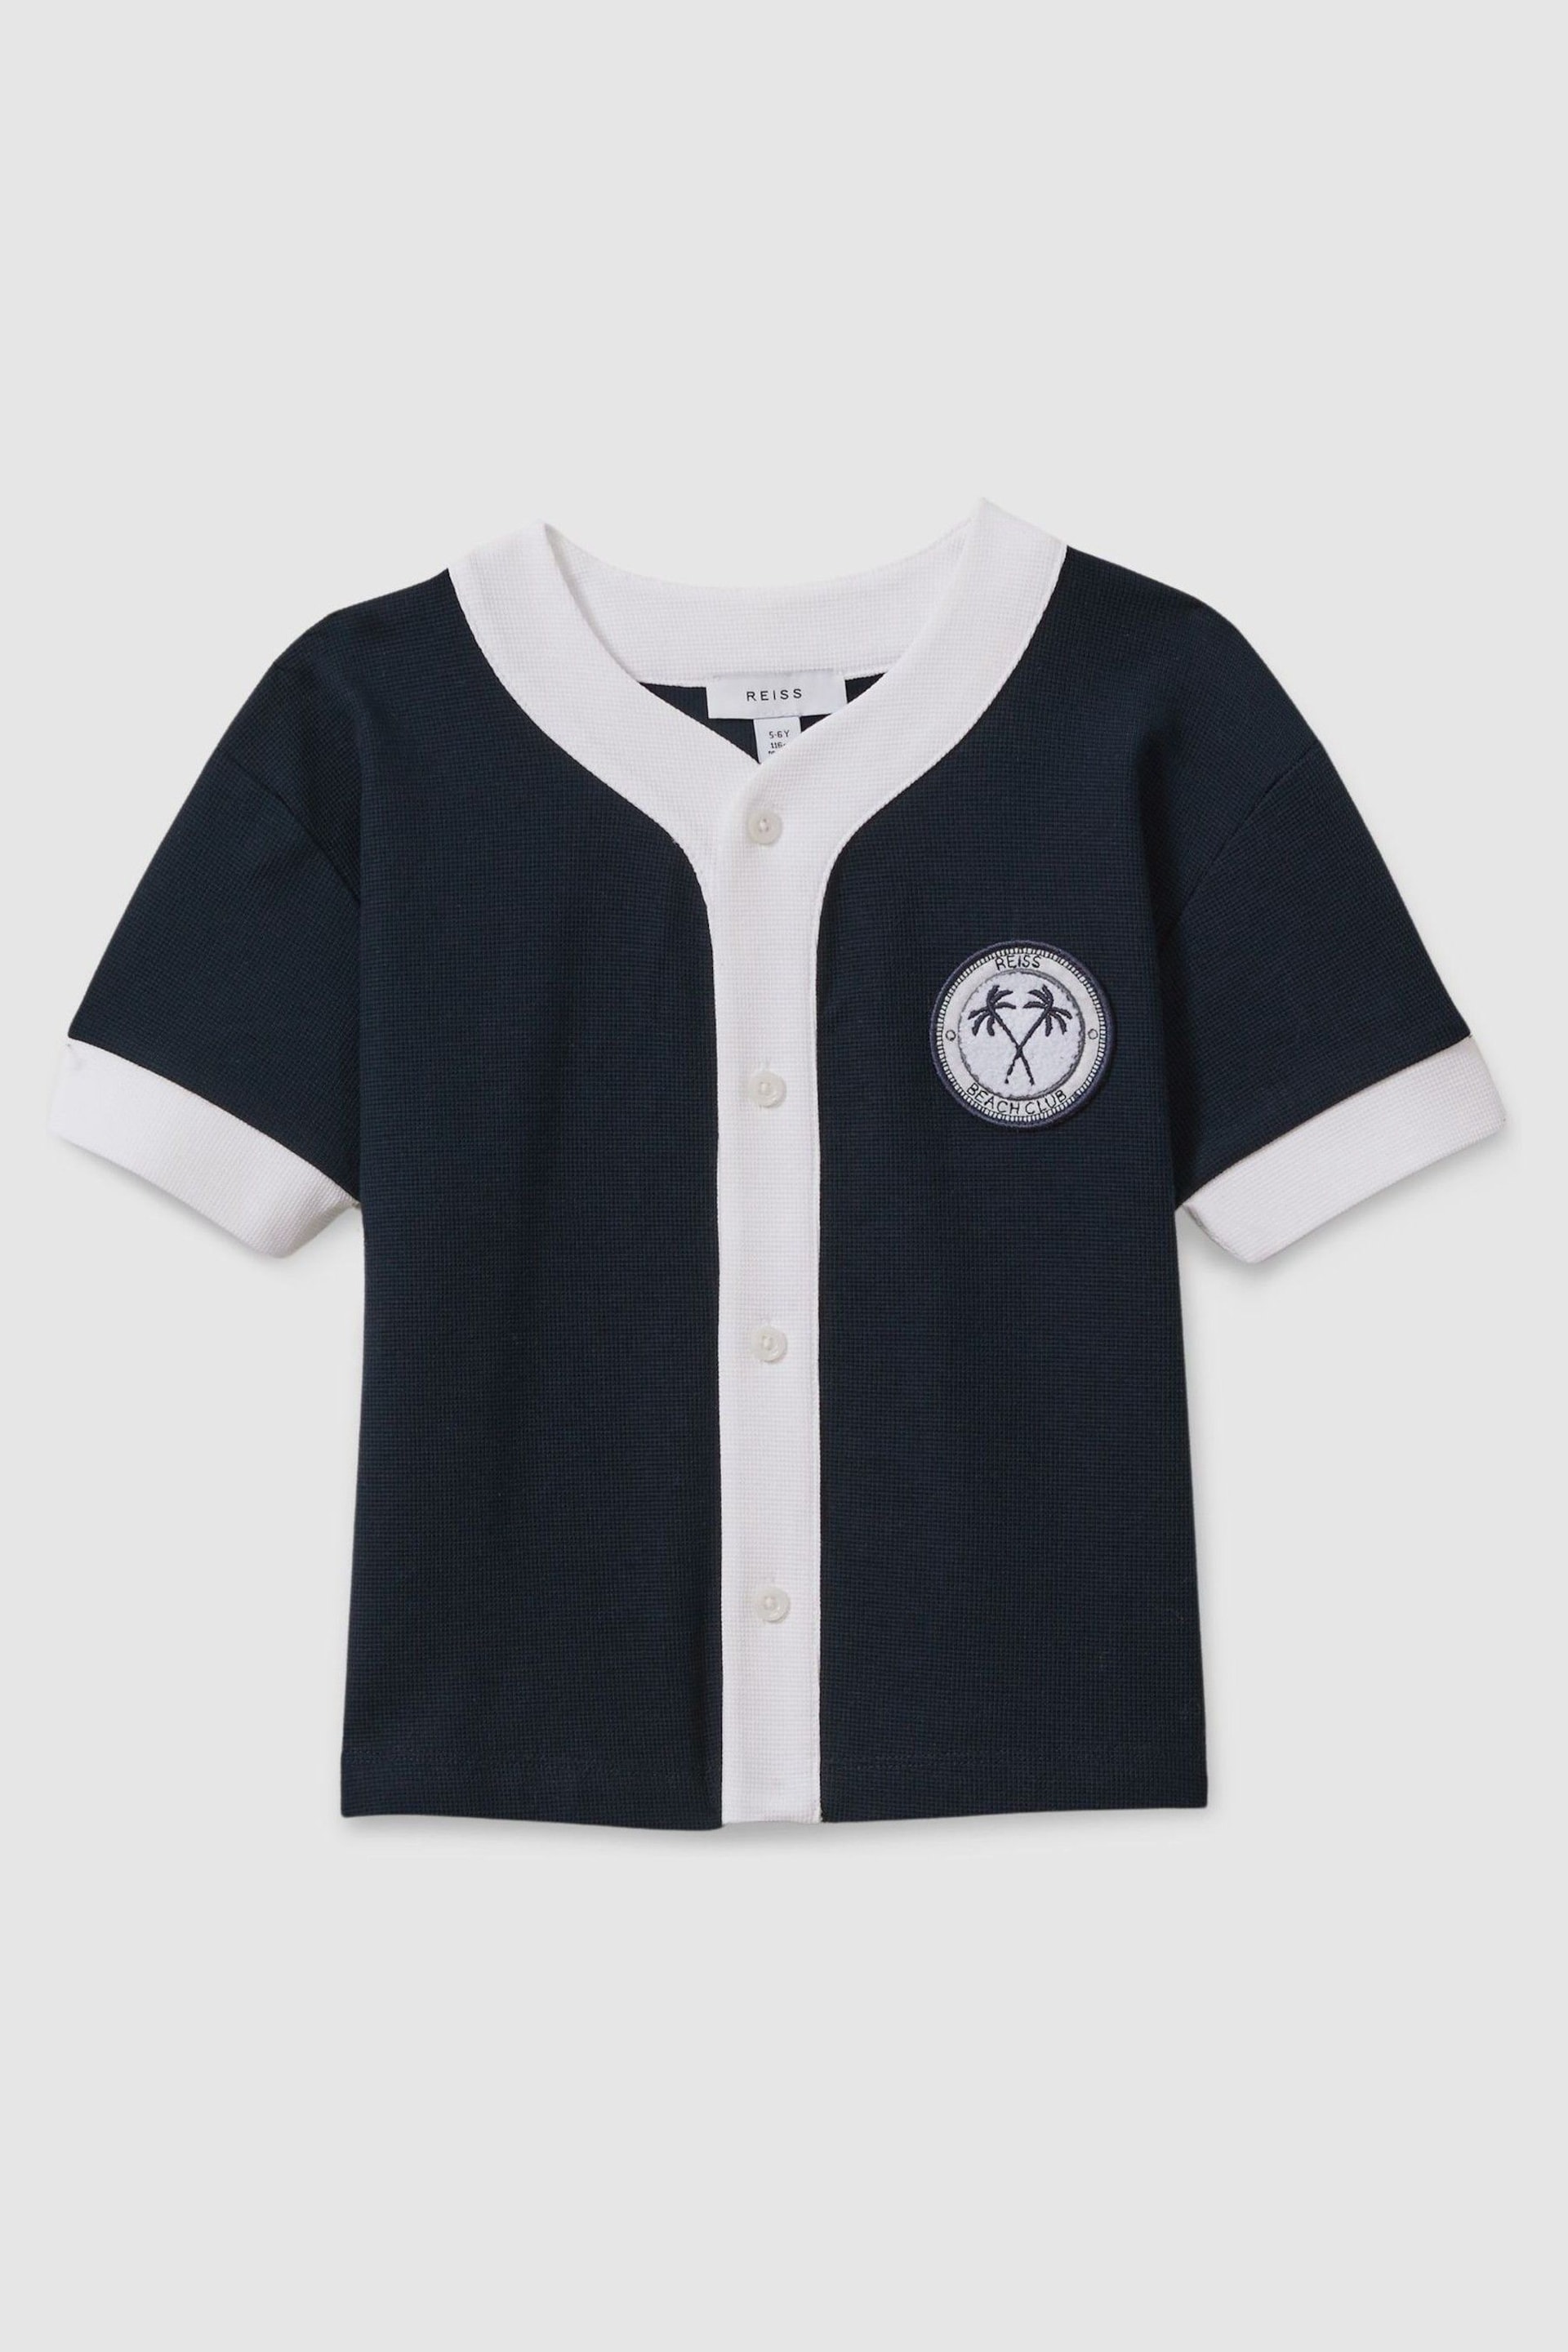 Reiss Navy/White Ark Senior Textured Cotton Baseball Shirt - Image 2 of 4